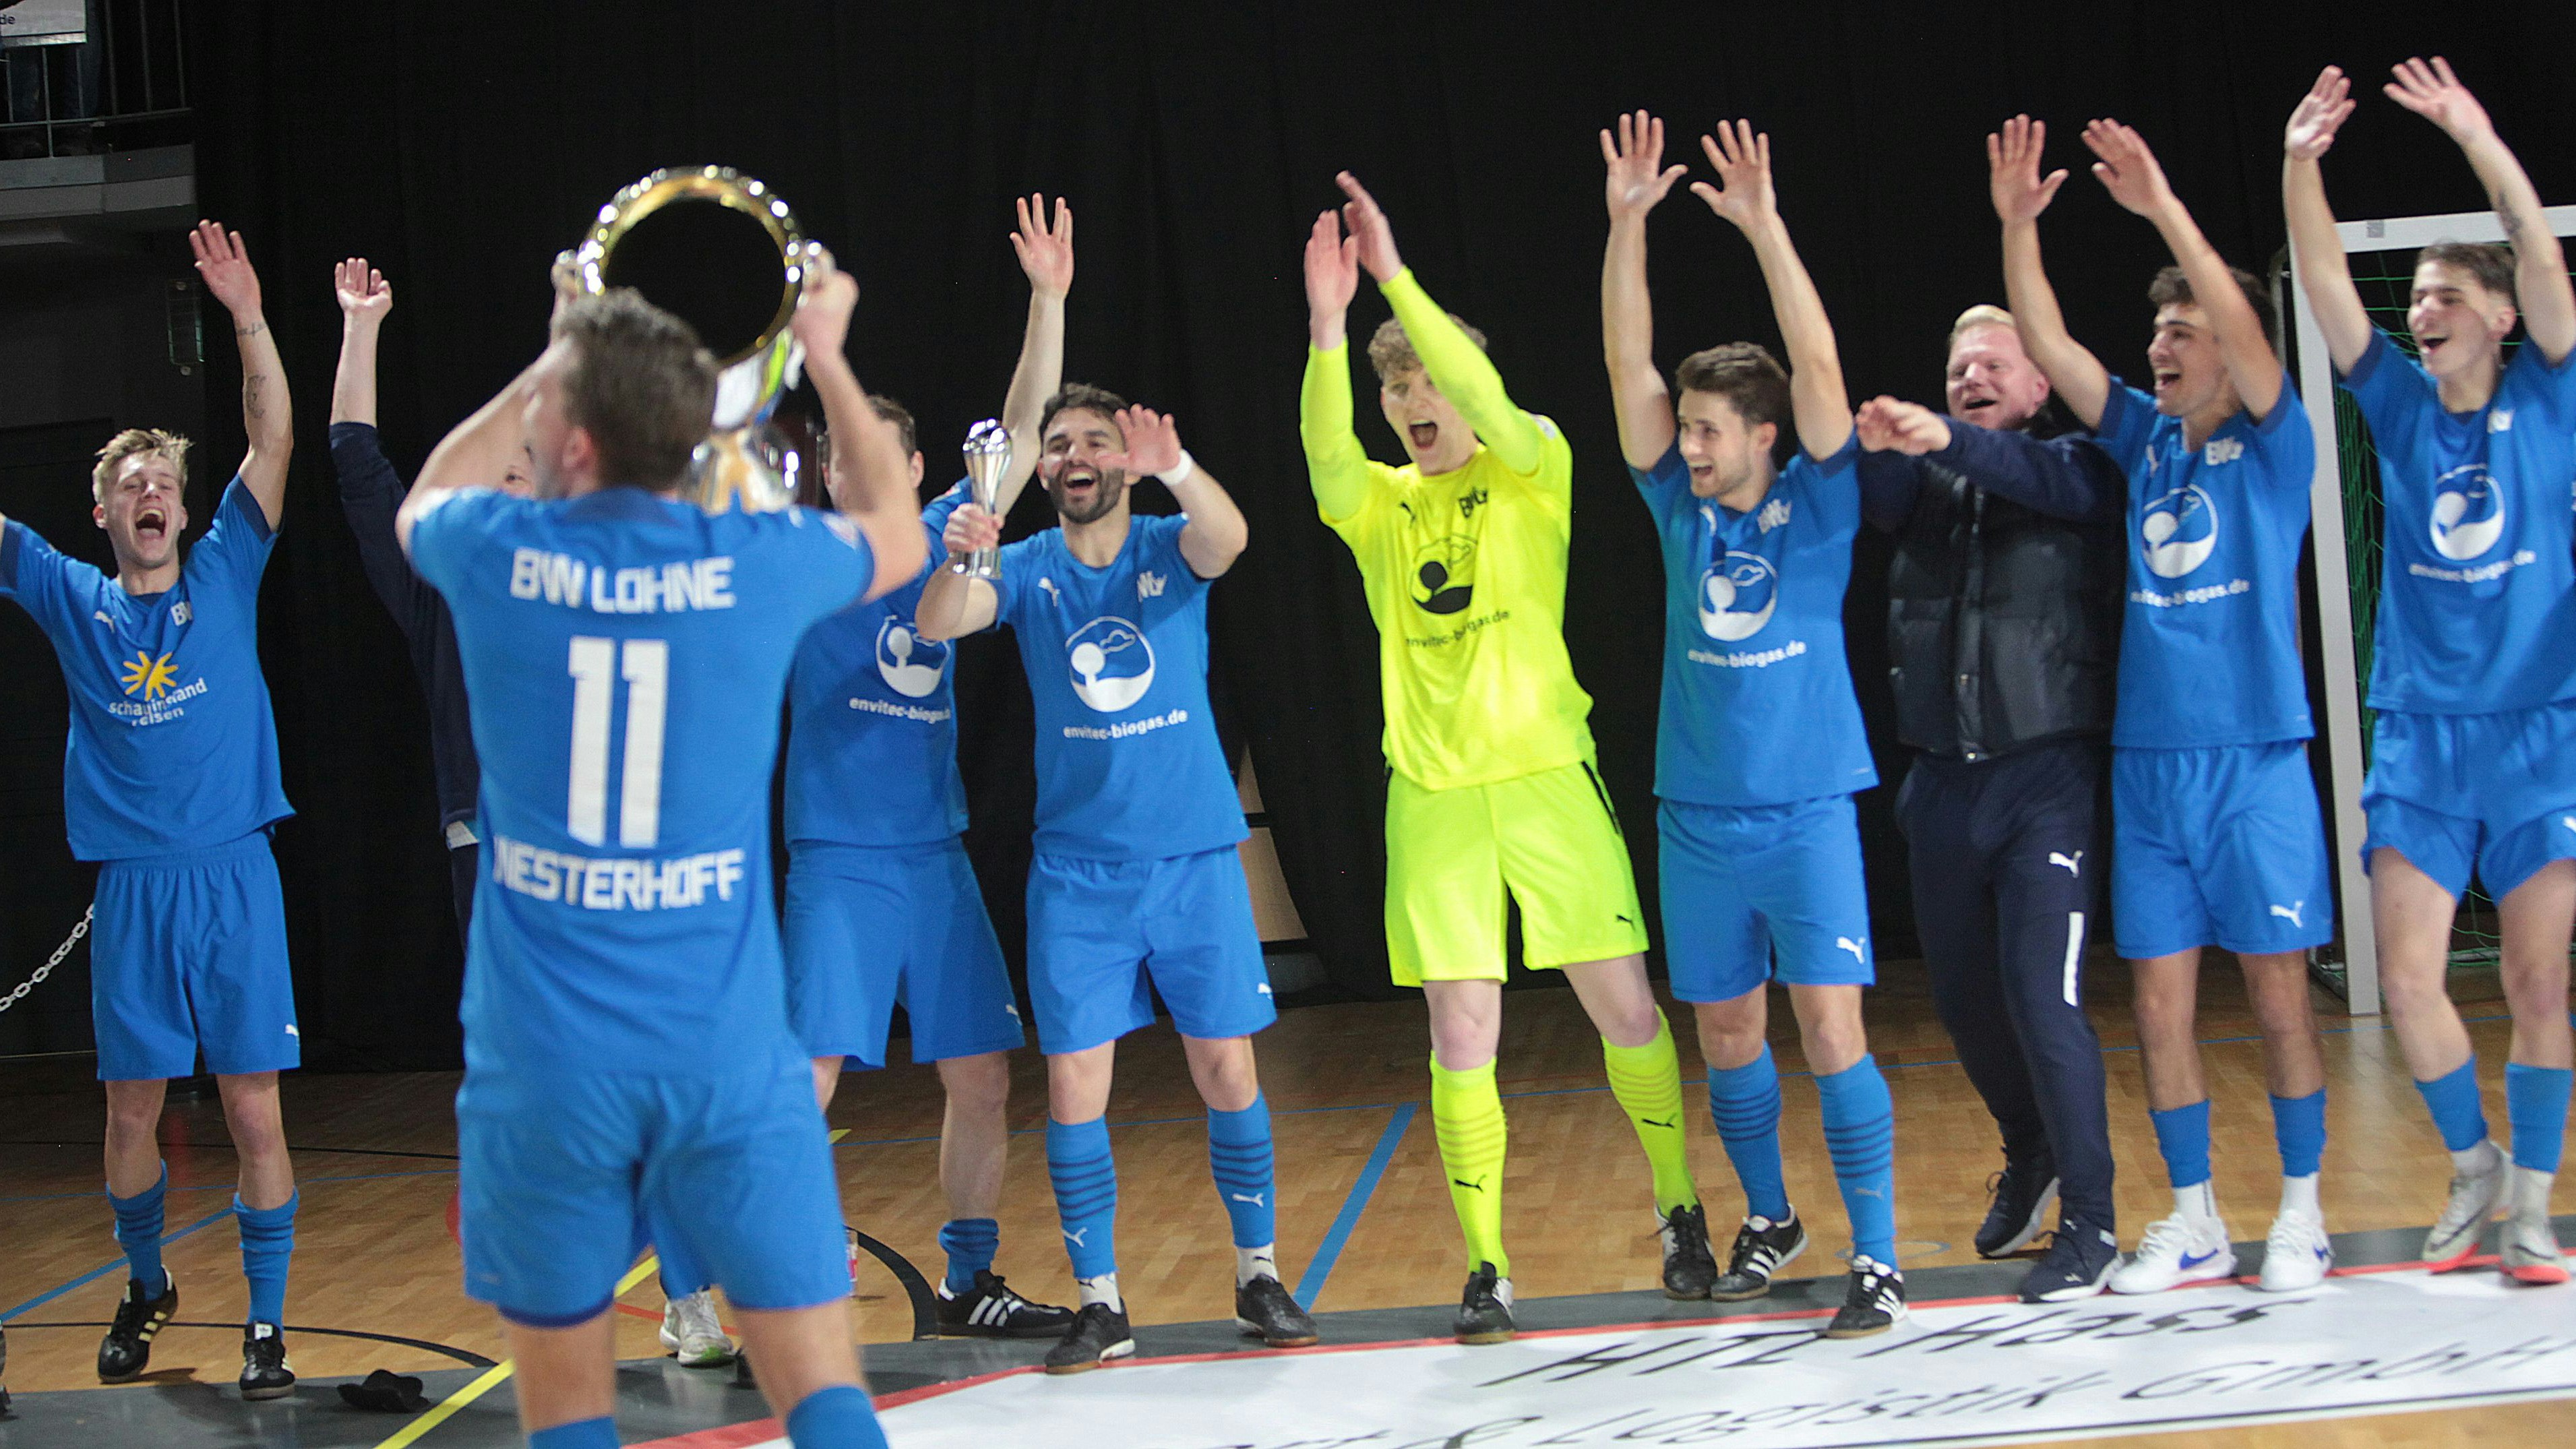 Da ist das Ding! Lohnes Kai Westerhoff präsentiert seinen Teamkollegen den riesigen Supercup. Fotos: Elke Schikora/Frank Wenzel